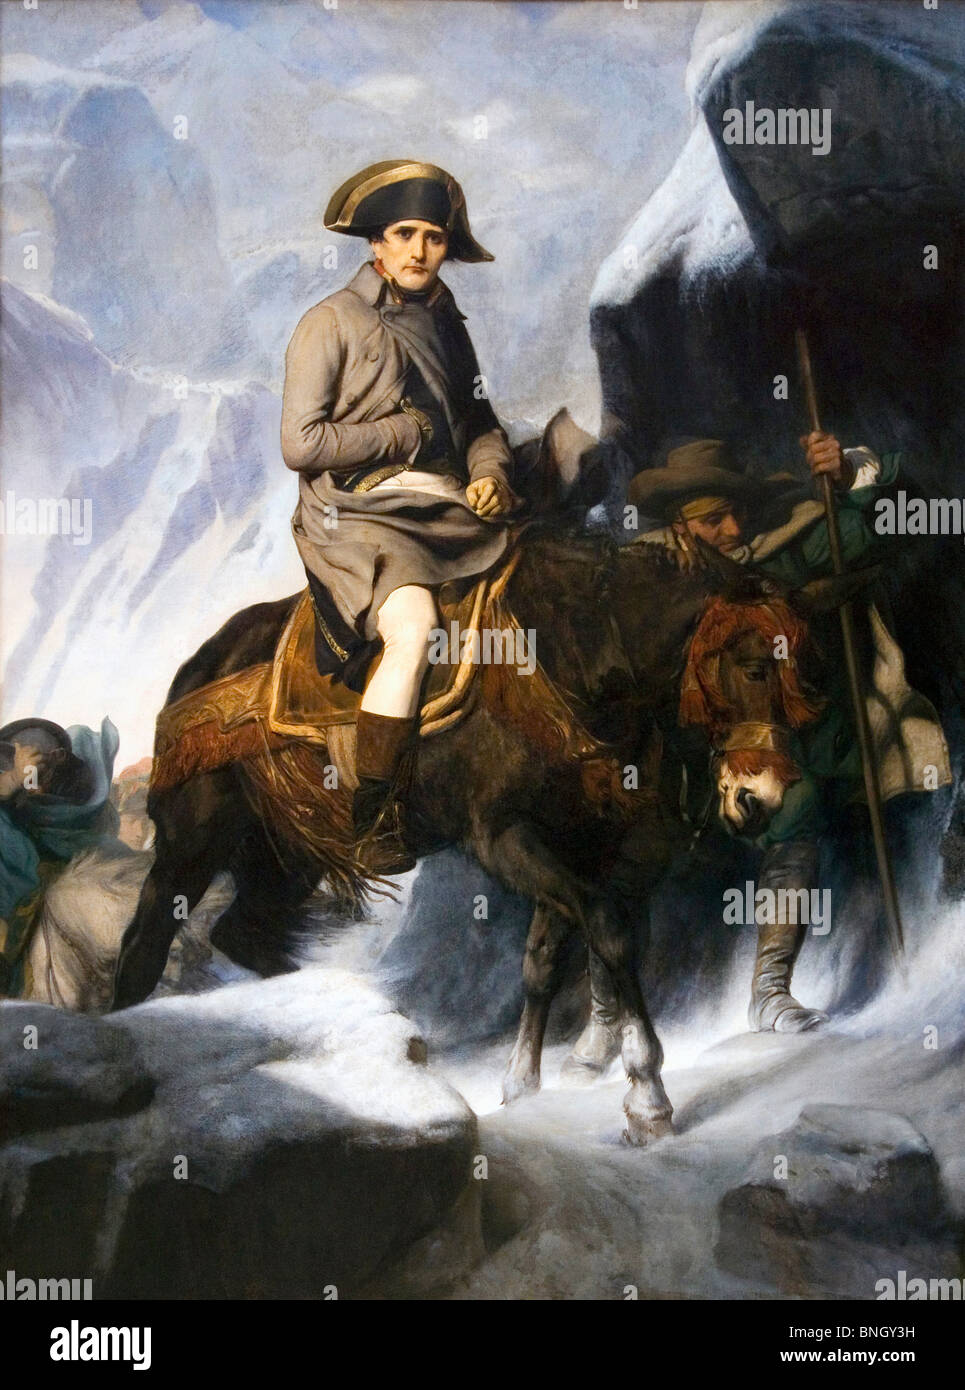 Napoléon traversant les Alpes, par Paul Delaroche, huile sur toile, 1850, France, Paris, Musée du Louvre, 1797-1856 Banque D'Images